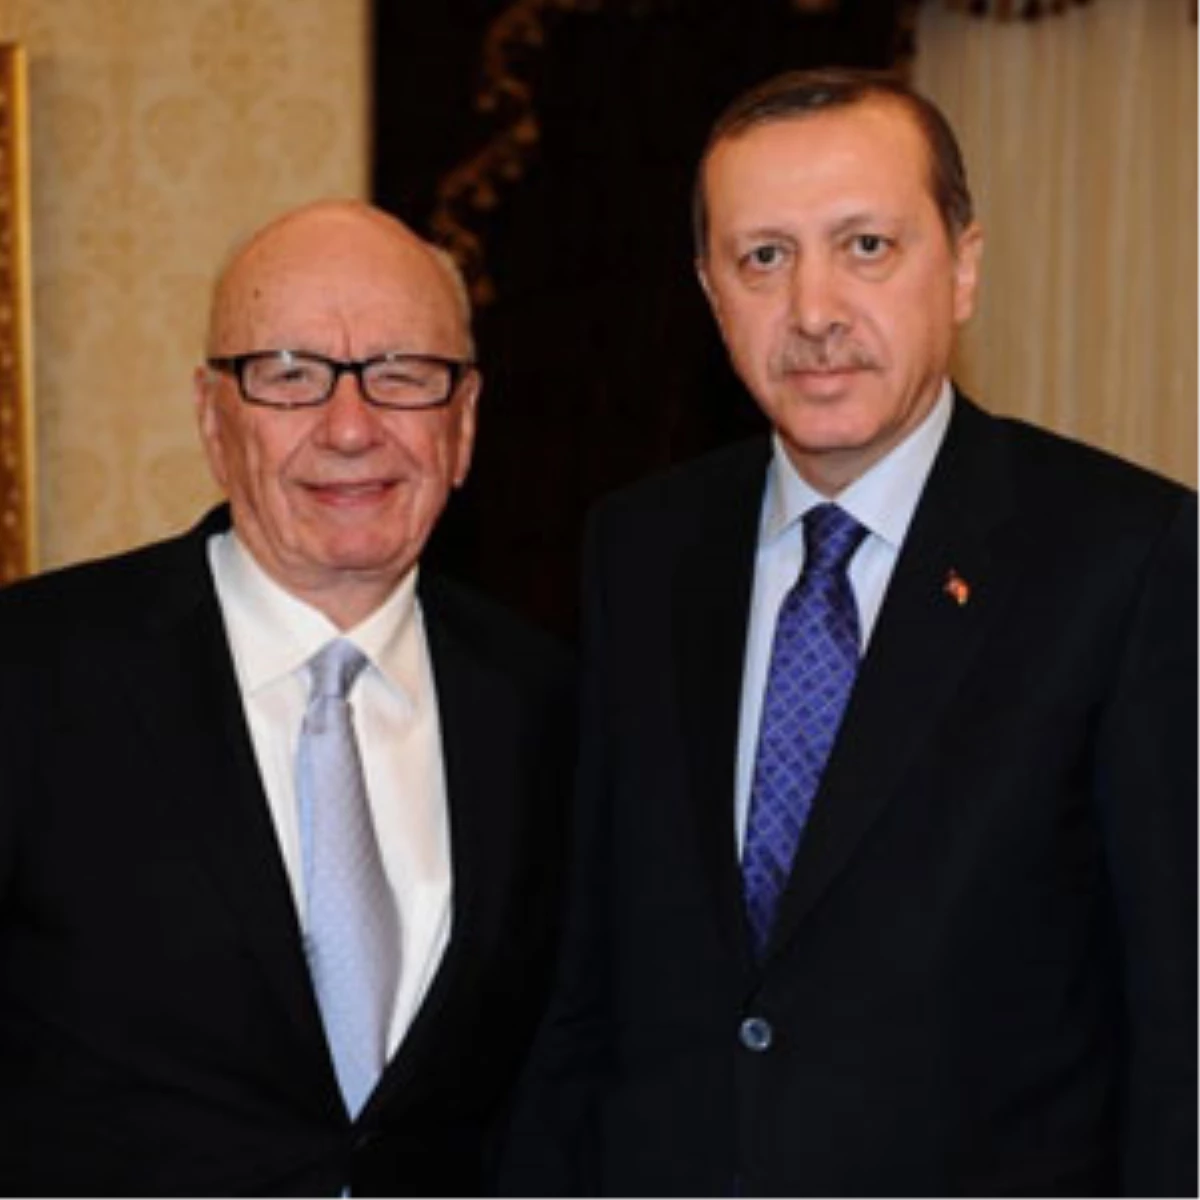 Ruppert Murdoch: Türkiye Medya Açısında Önemli Bir Ülke